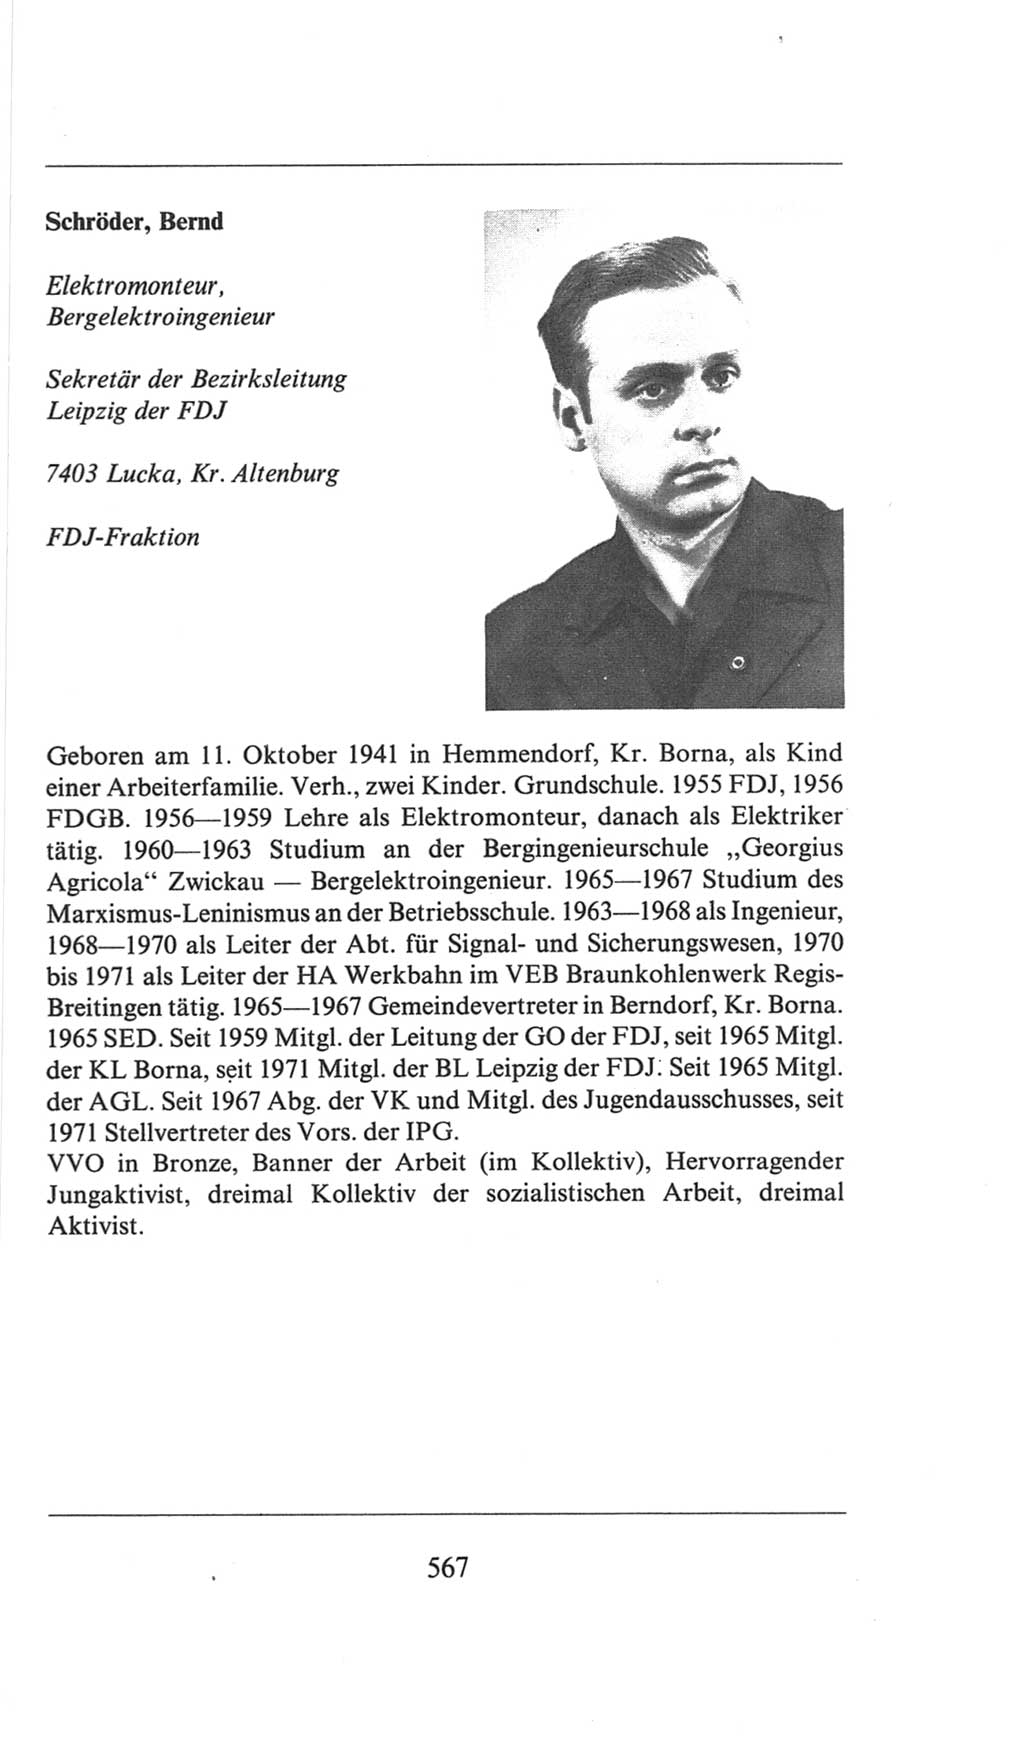 Volkskammer (VK) der Deutschen Demokratischen Republik (DDR), 6. Wahlperiode 1971-1976, Seite 567 (VK. DDR 6. WP. 1971-1976, S. 567)